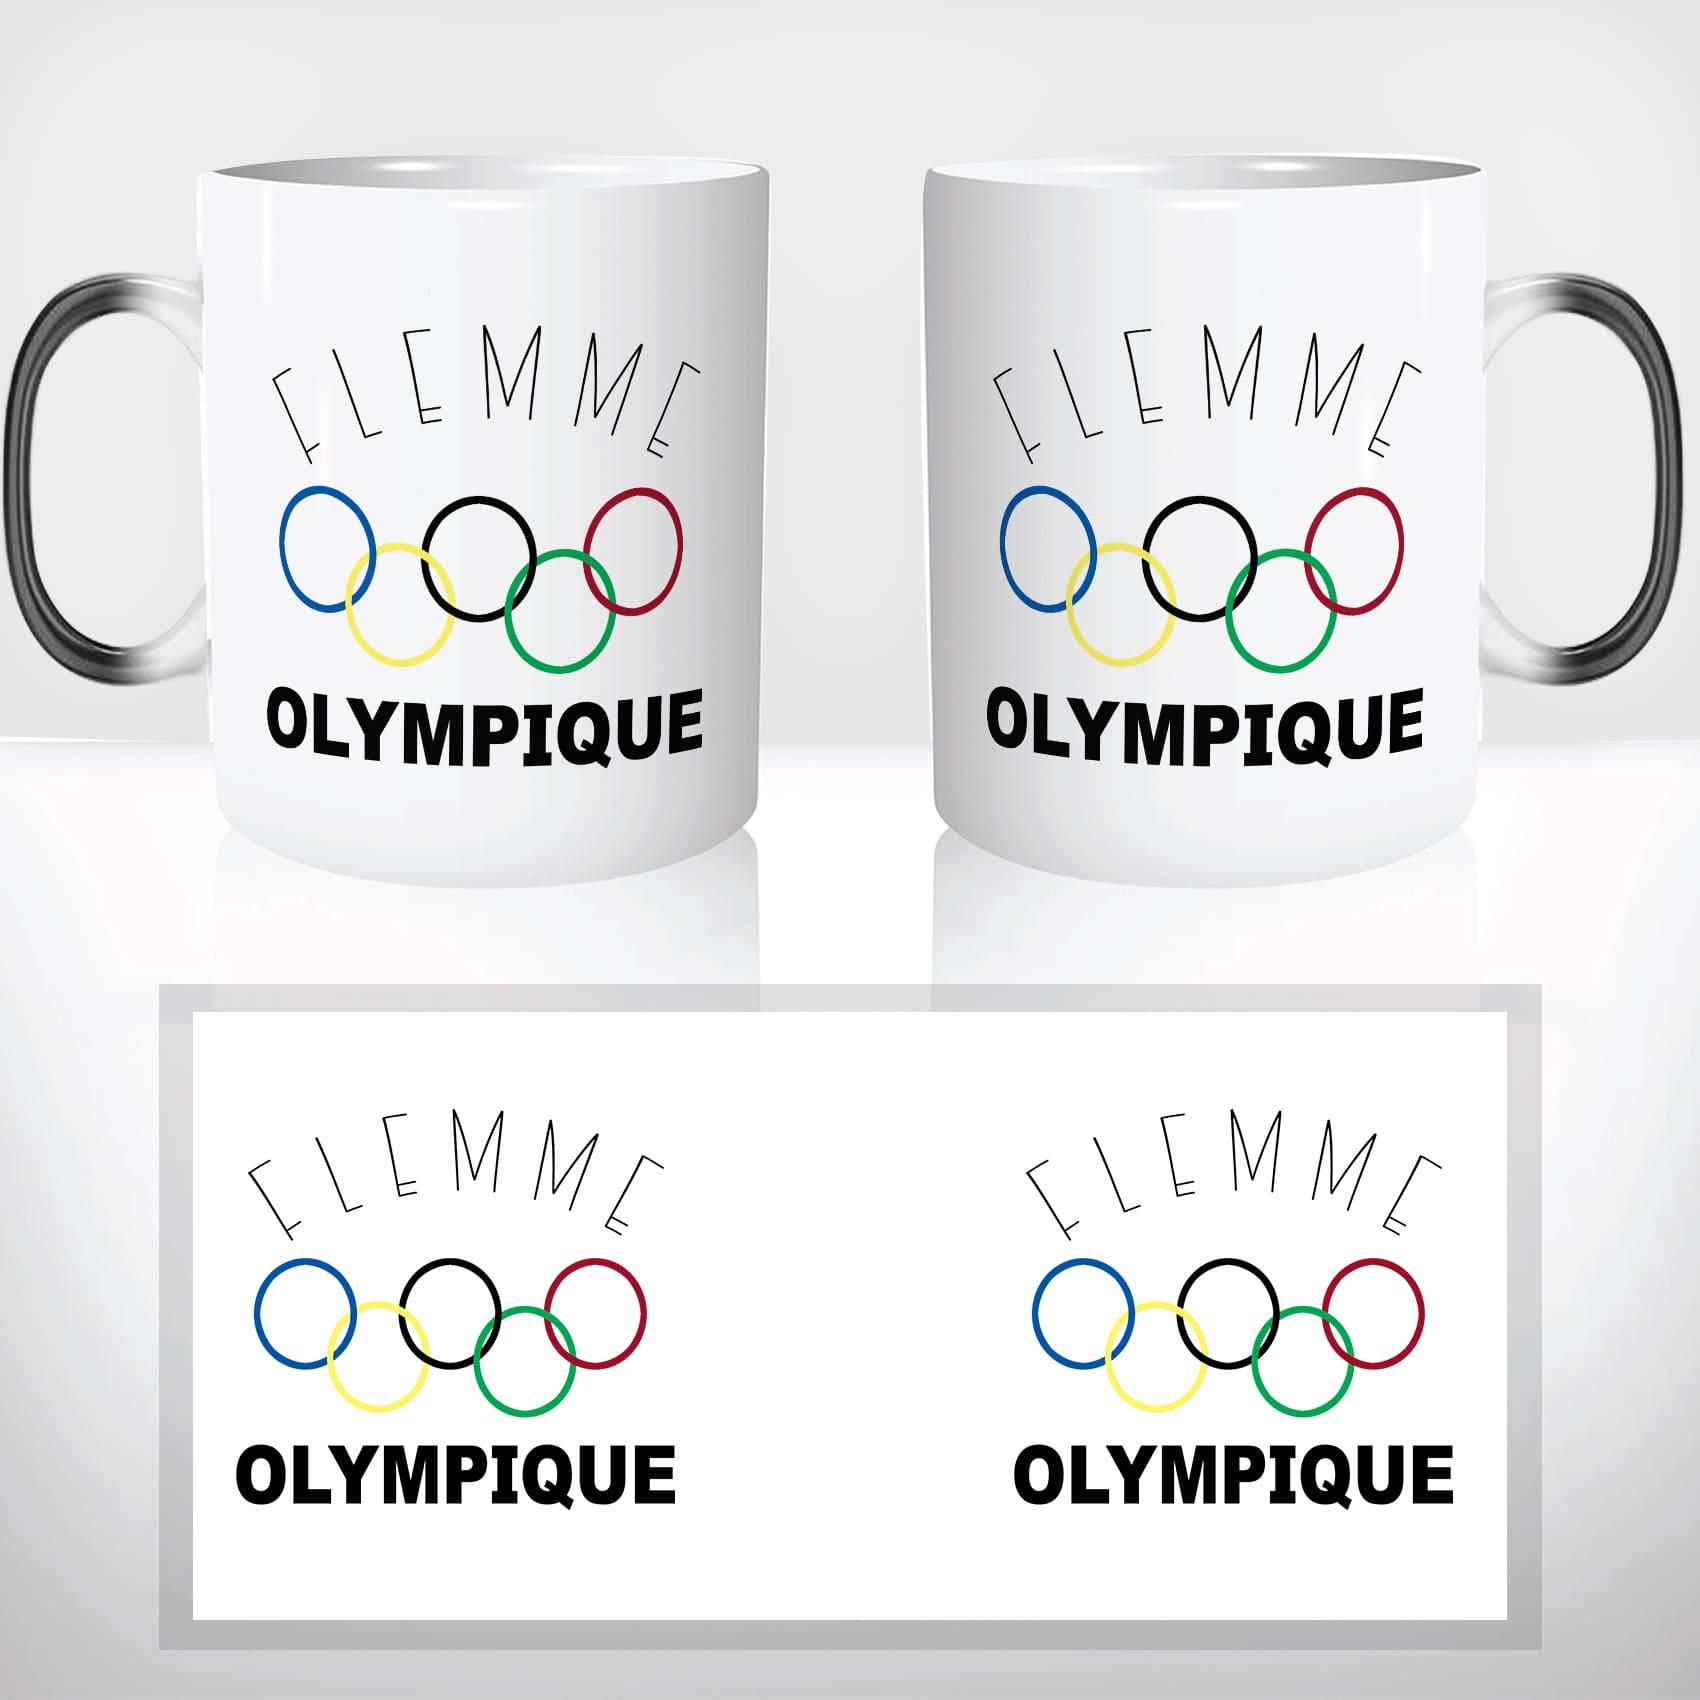 mug-magique-tasse-magic-thermo-reactif-flemme-olympique-pas-envie-travail-collegue-sieste-drole-humour-offrir-cadeau-original-fun2